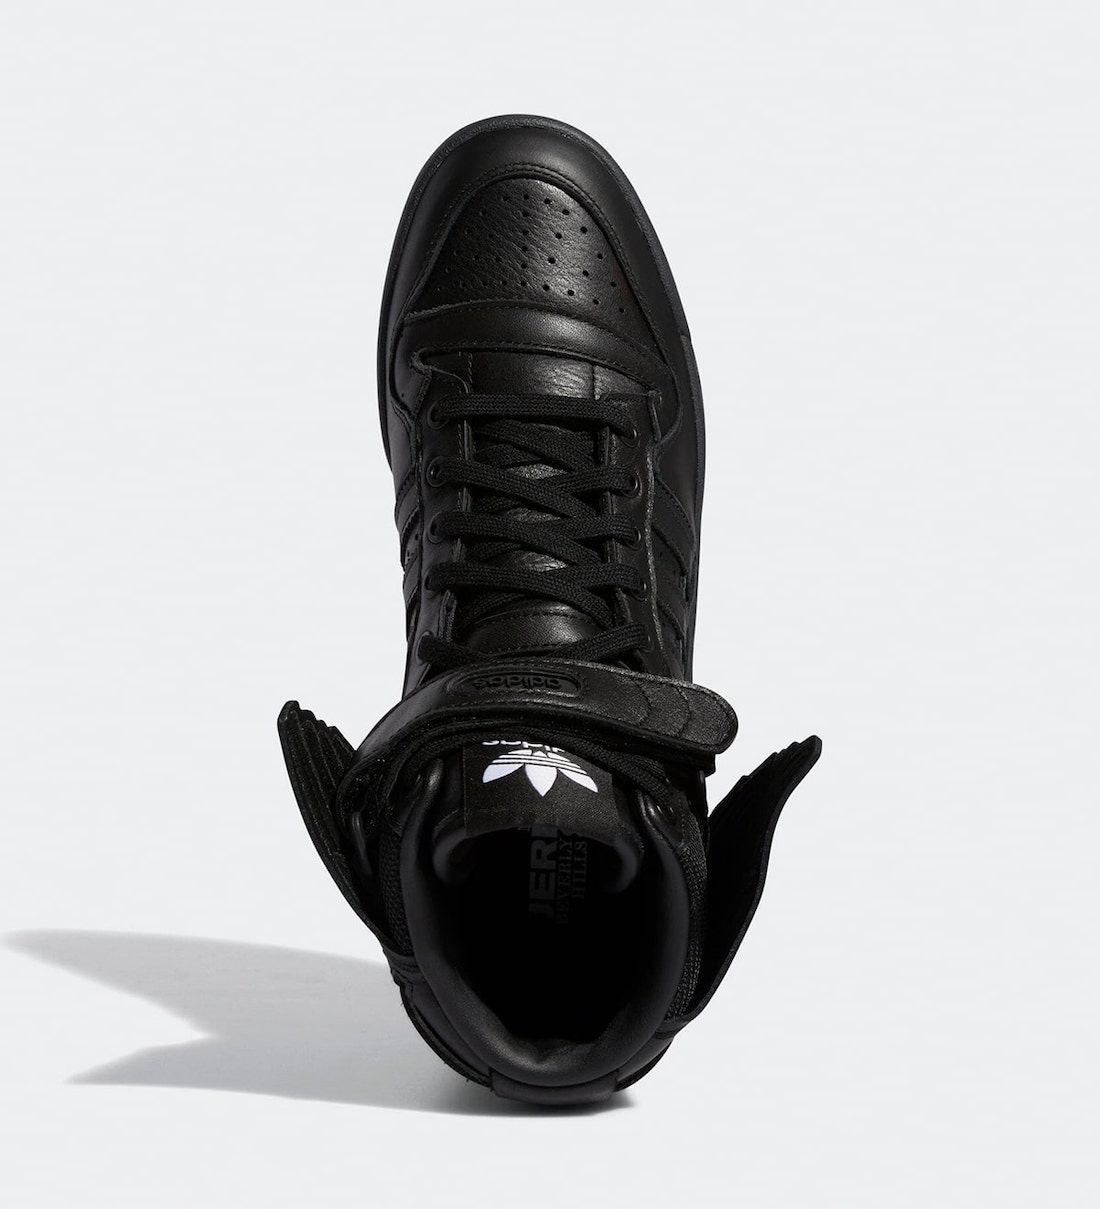 Jeremy Scott adidas Forum Hi Wings 4.0 Black GY4419 Release Date Info